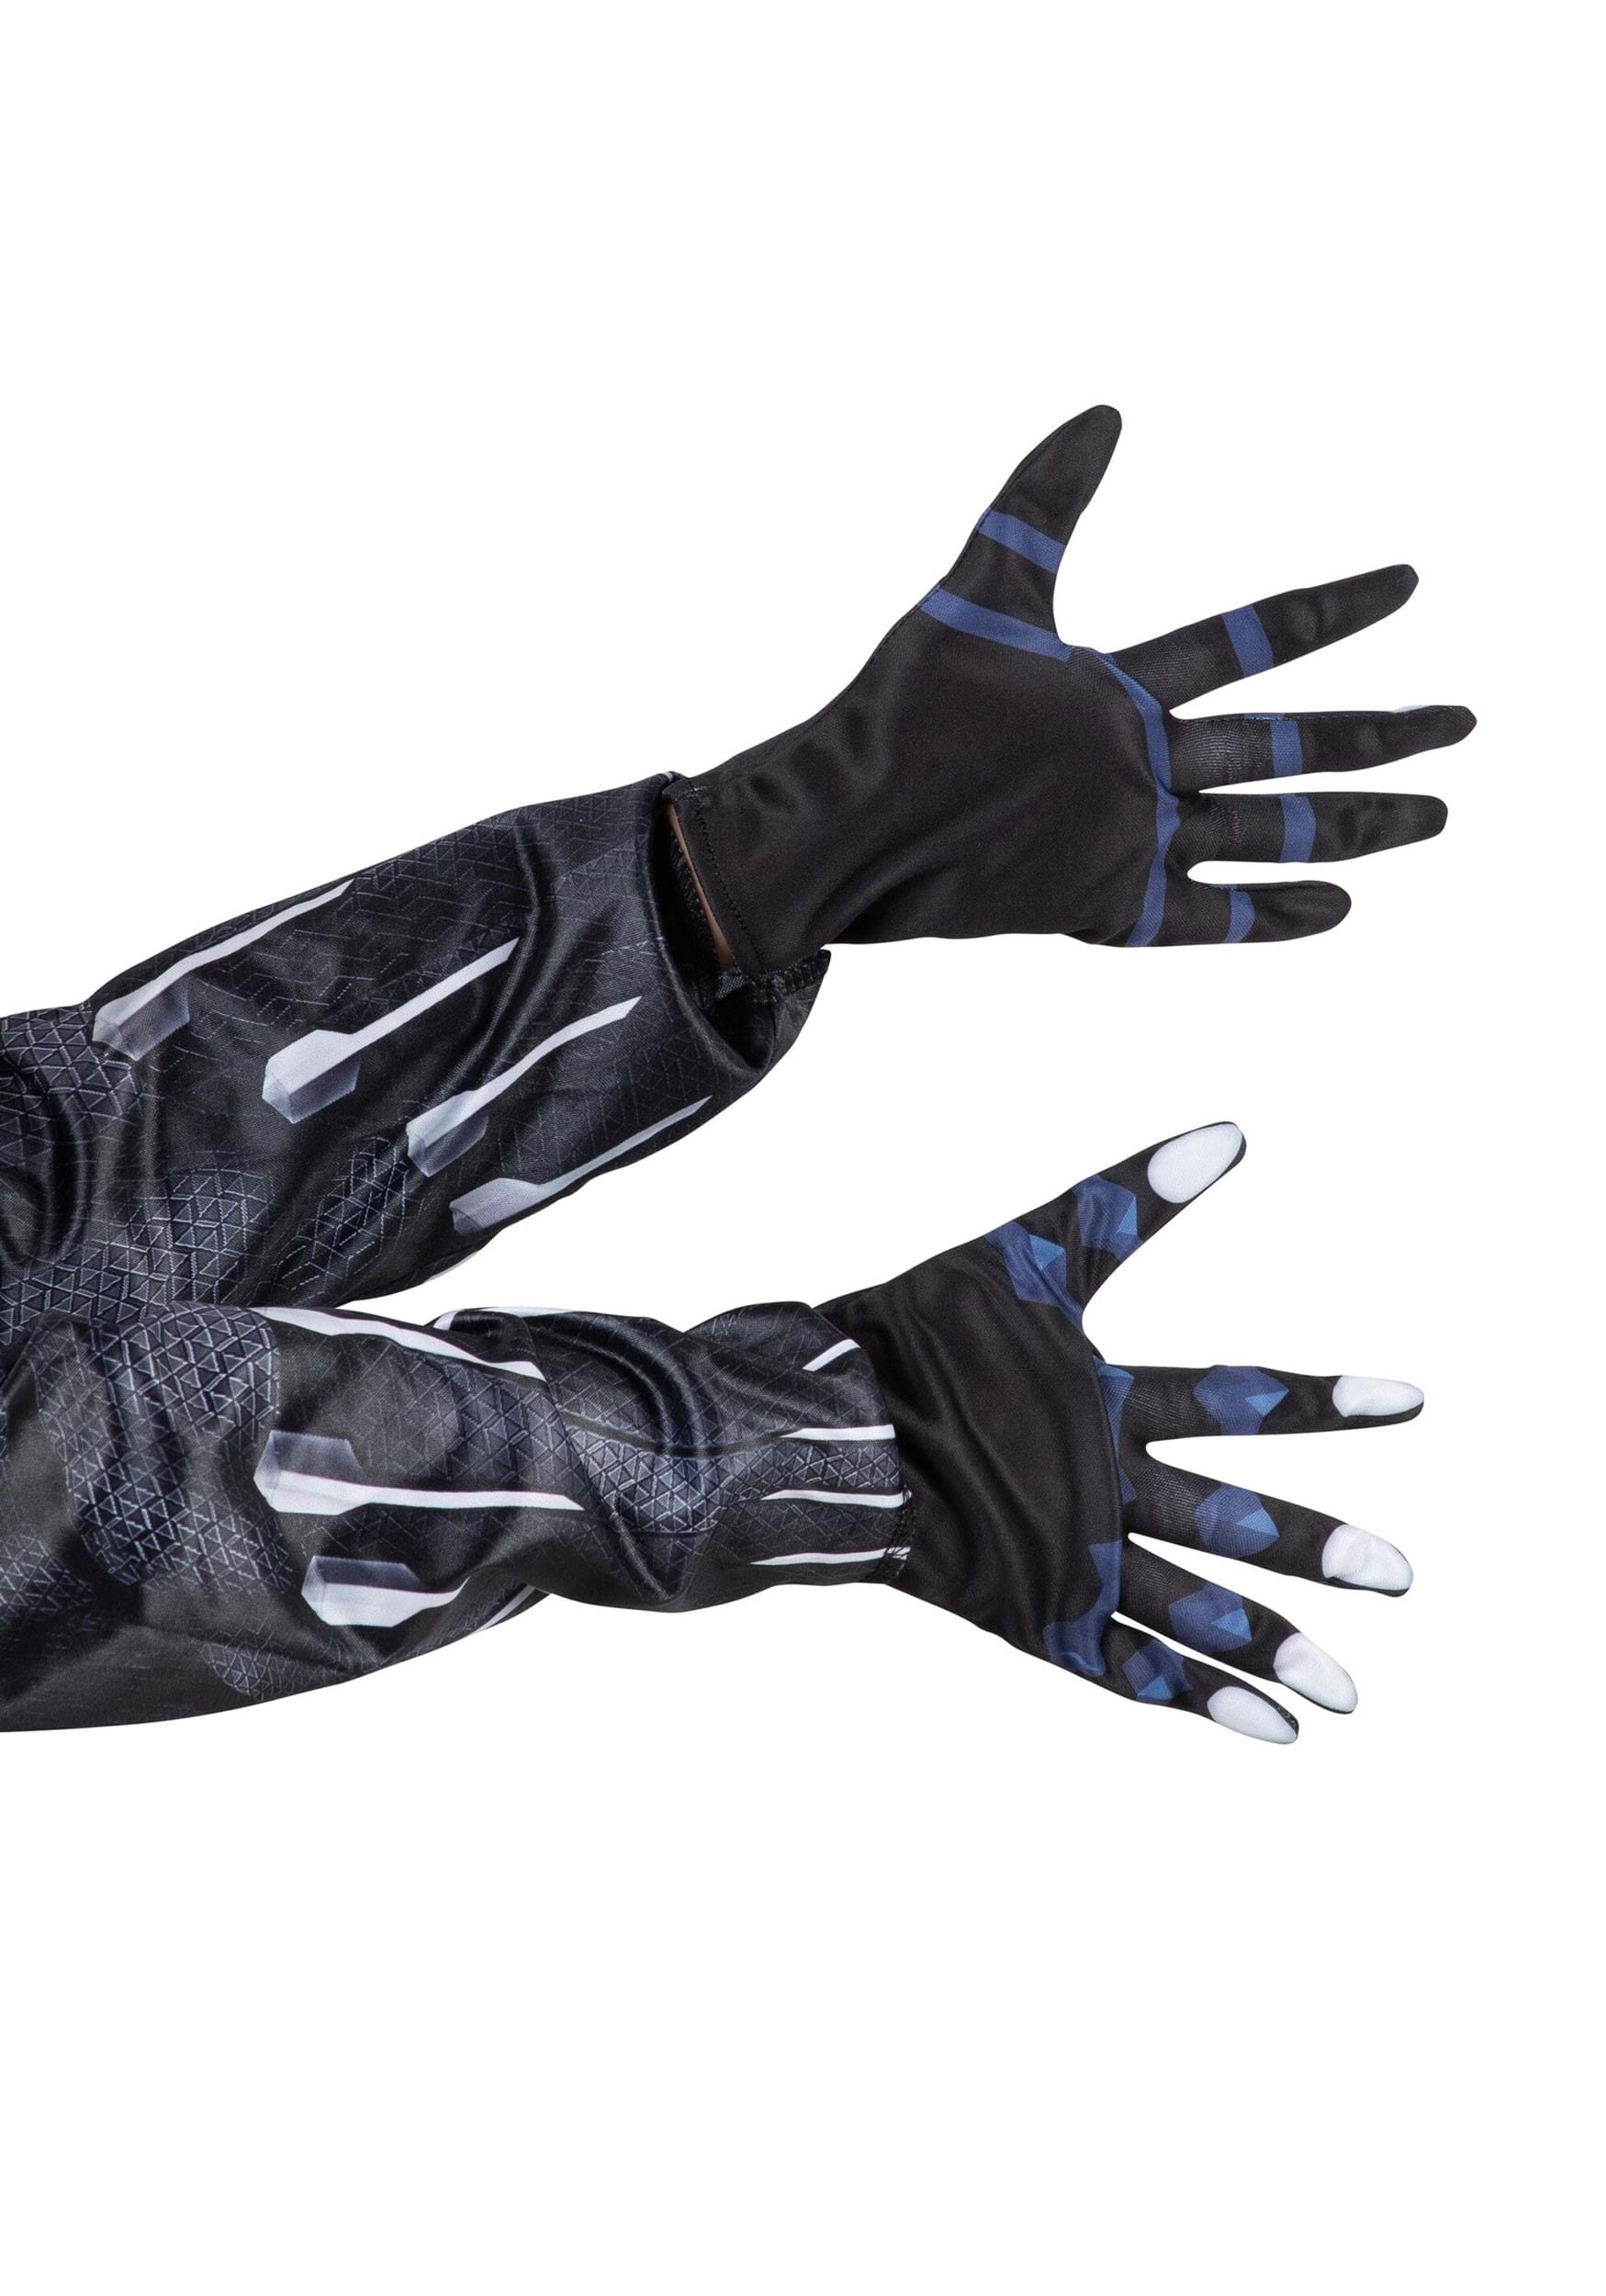 Black Panther Gloves for Kids